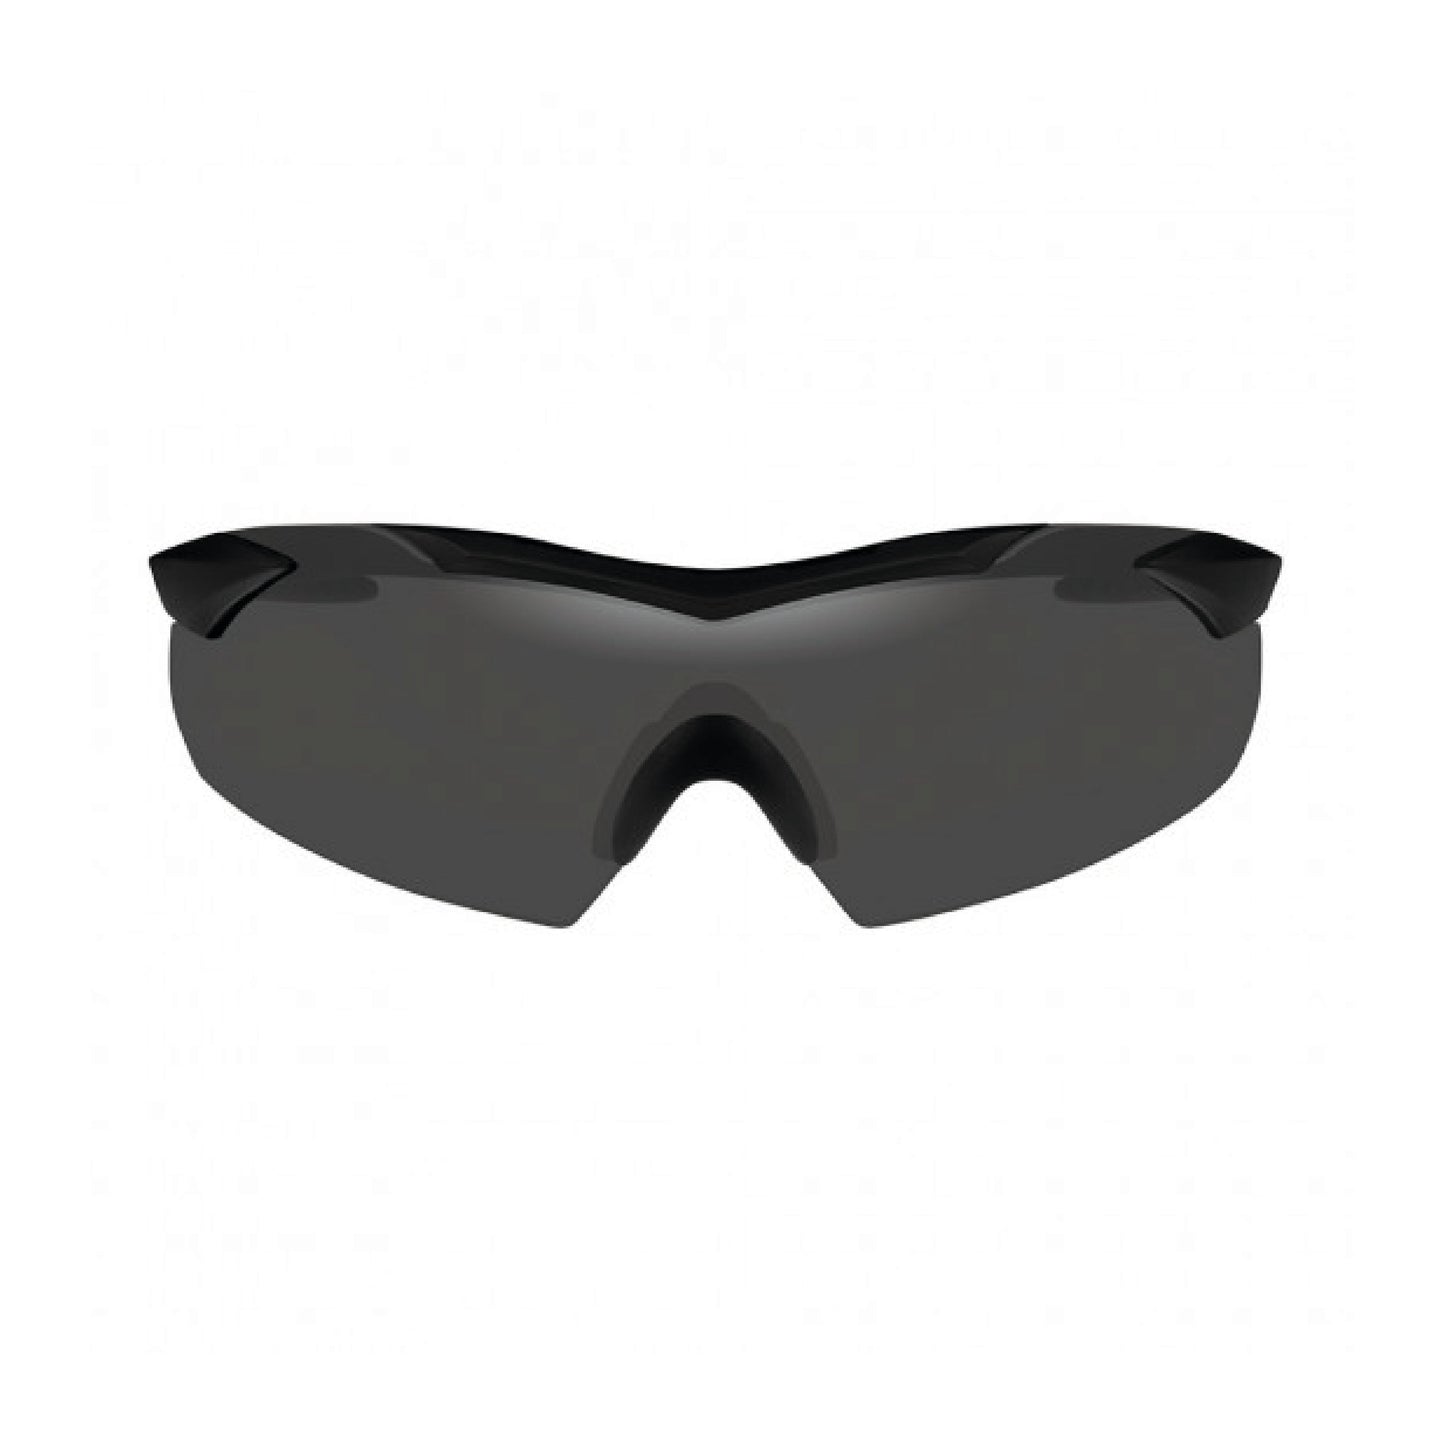 WILEY X VAPOR 2.5 Schutzbrille schwarz + grau/klar/orange